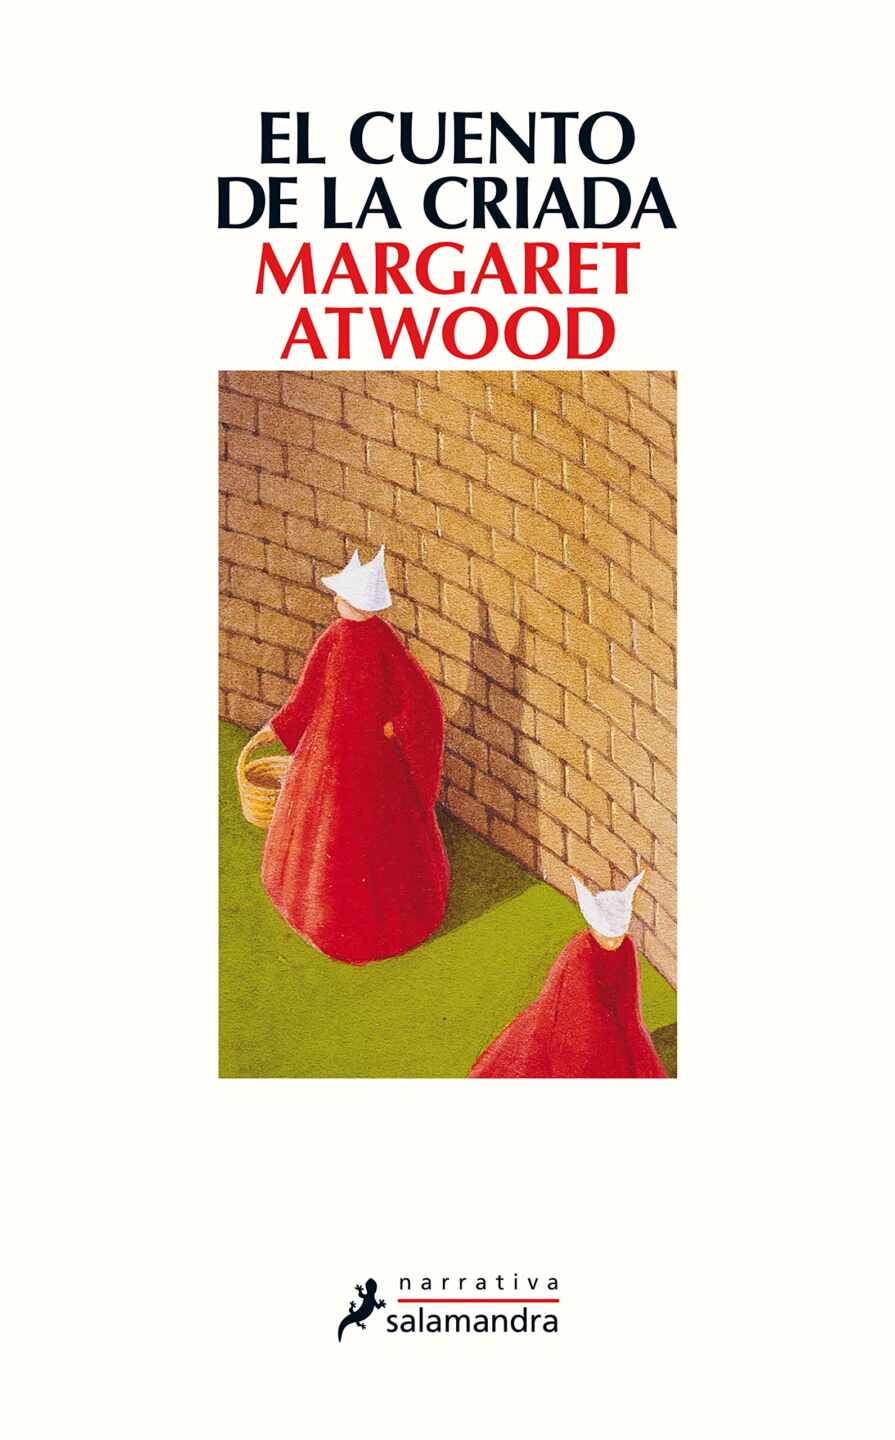 Portada del libro "El cuento de la criada" de Margaret Atwood 